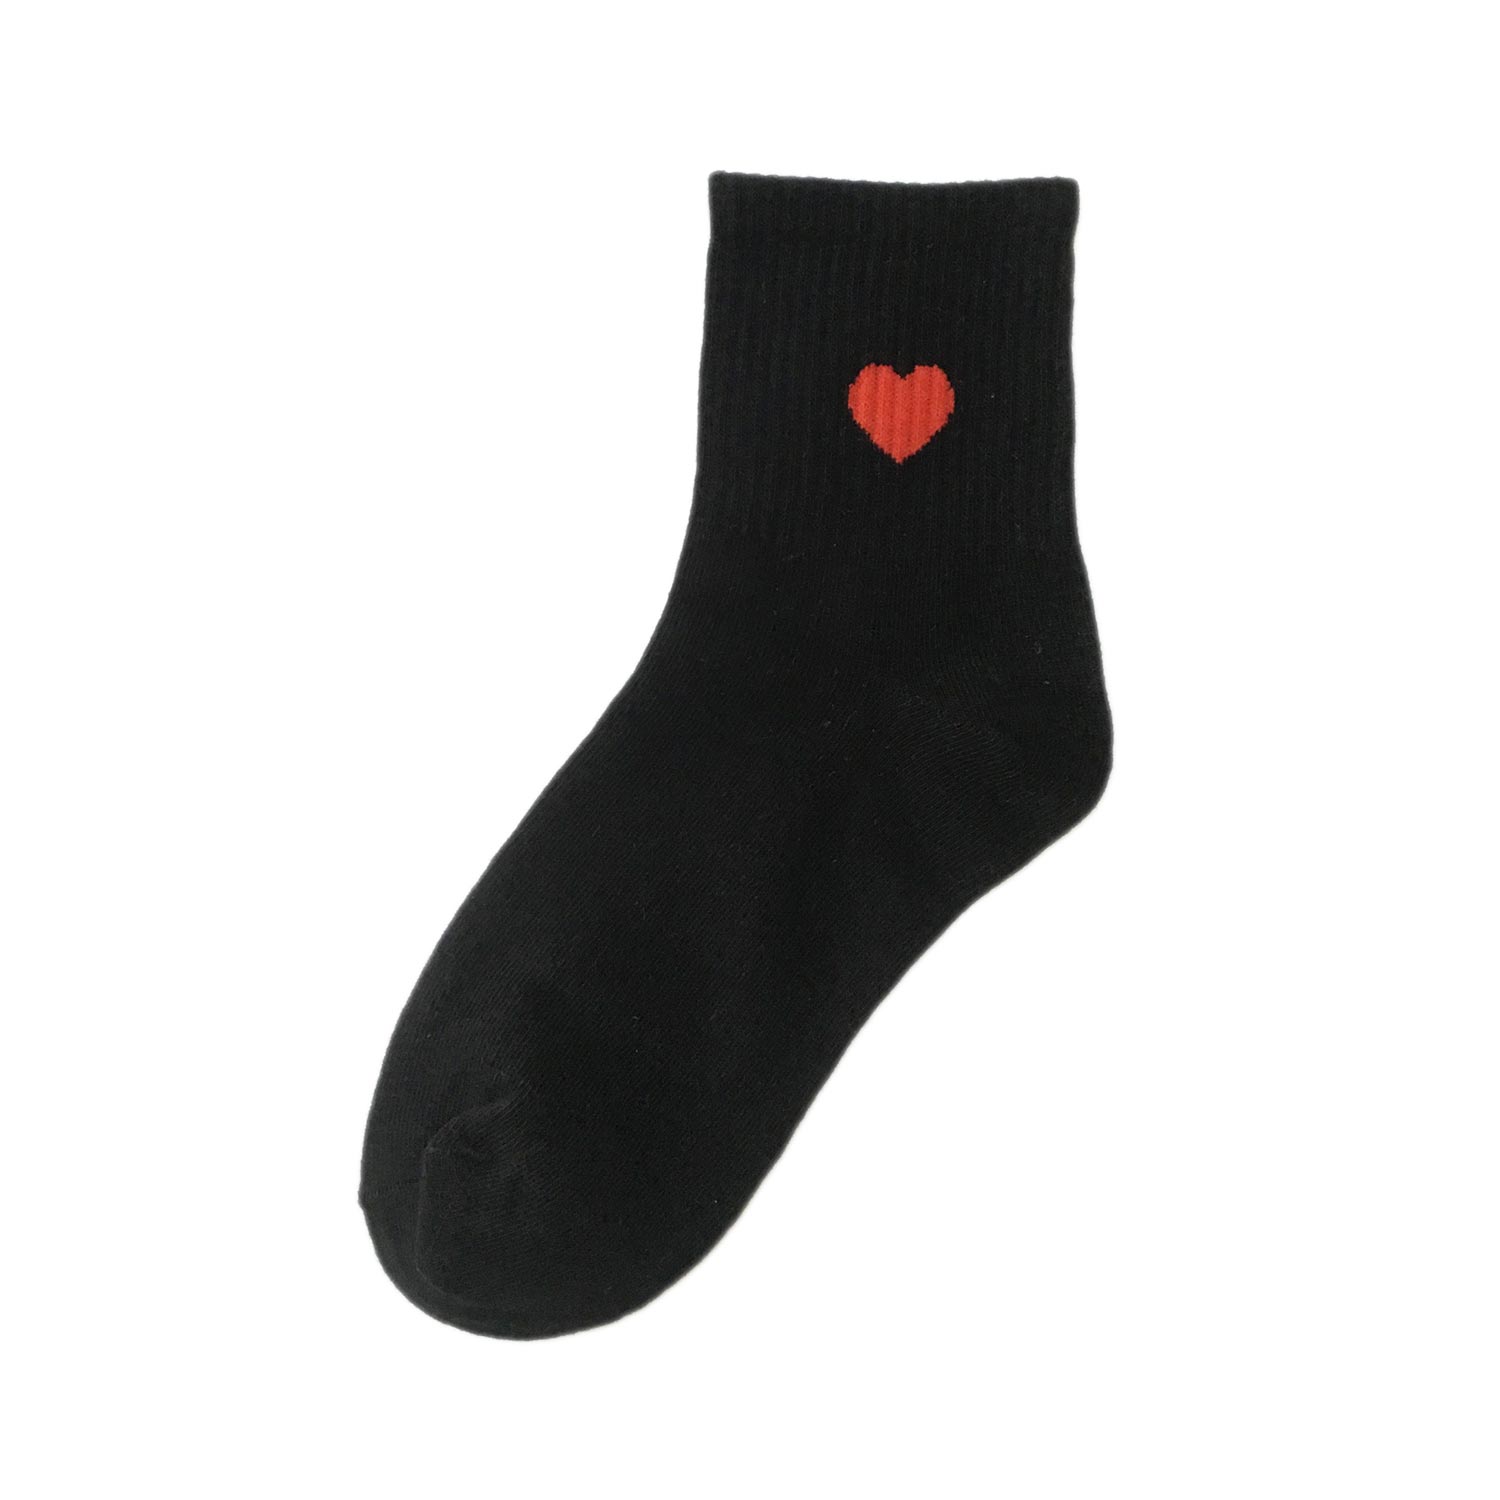 Короткие черные носки. Morran носки 221-02. Лии Купер носки мужские. Penguin Original носки. Носки черные.